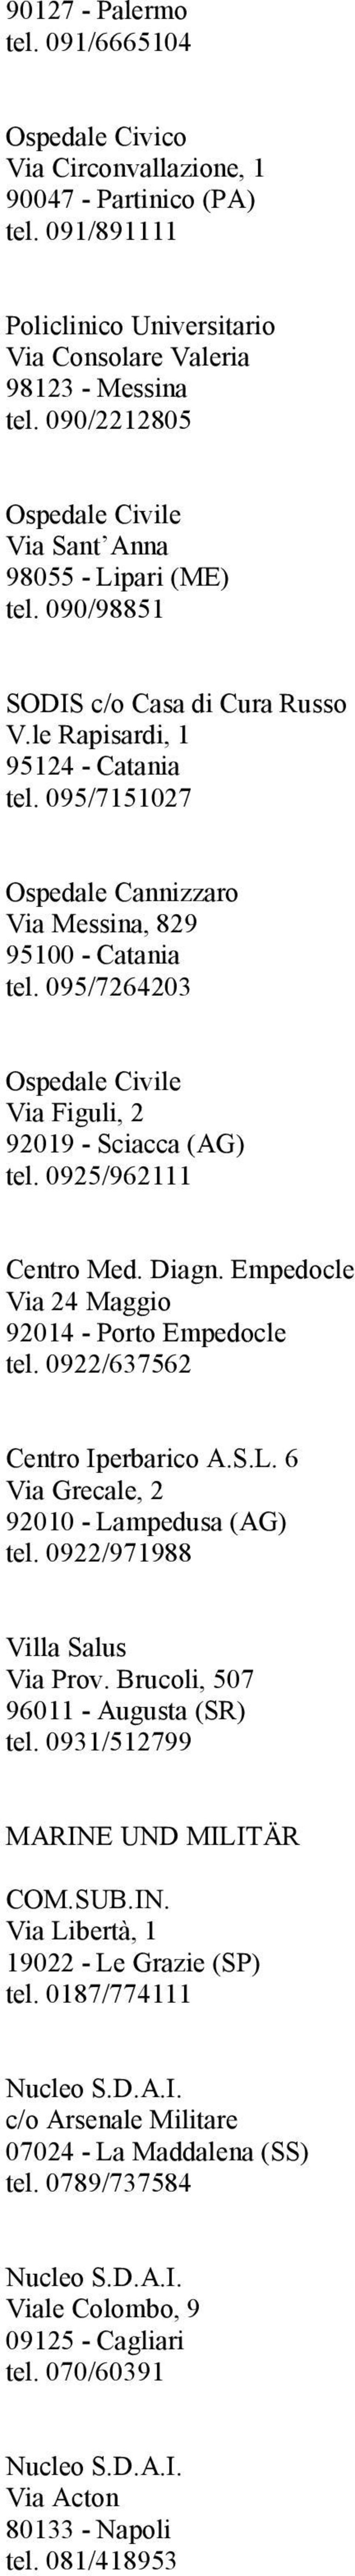 095/7151027 Ospedale Cannizzaro Via Messina, 829 95100 - Catania tel. 095/7264203 Ospedale Civile Via Figuli, 2 92019 - Sciacca (AG) tel. 0925/962111 Centro Med. Diagn.